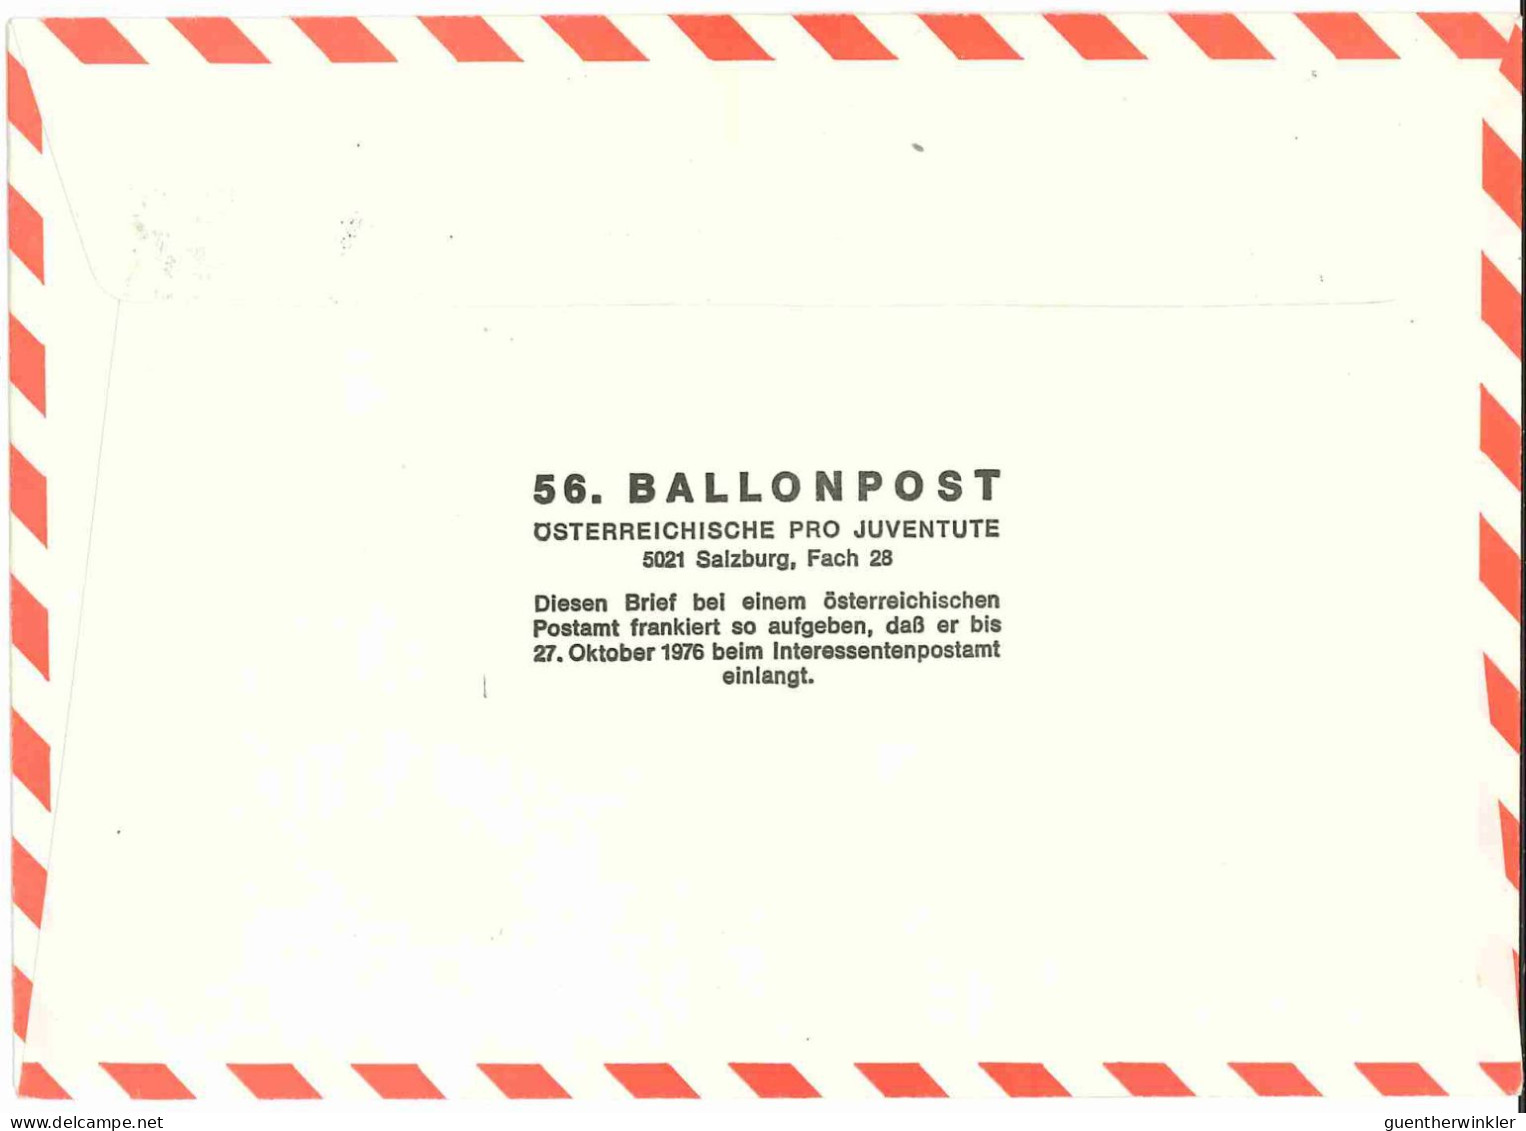 Regulärer Ballonpostflug Nr. 56a Der Pro Juventute [RBP56.] - Balloon Covers